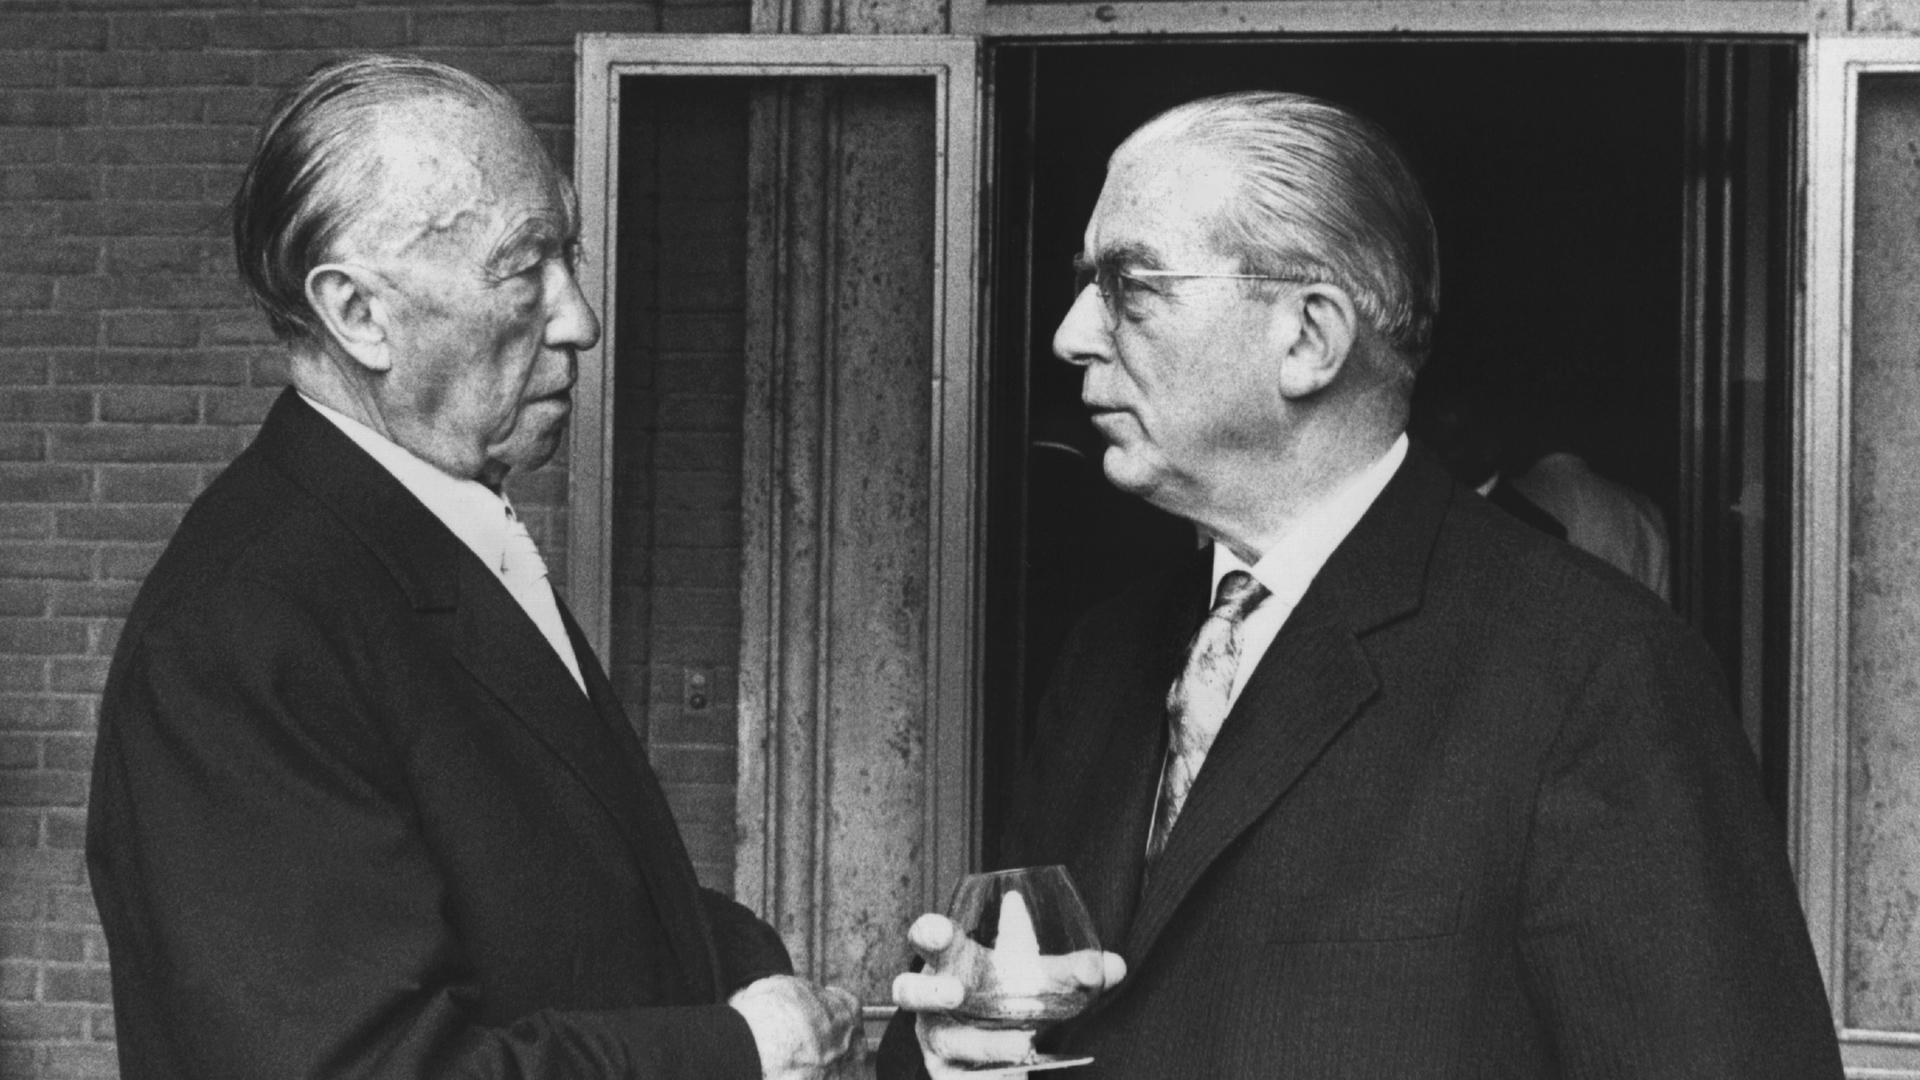 Bundeskanzler Konrad Adenauer und Staatssekretär Hans Globke im Gespräch. Aufgenommen im September 1963 in der italienischen Hauptstadt Rom.